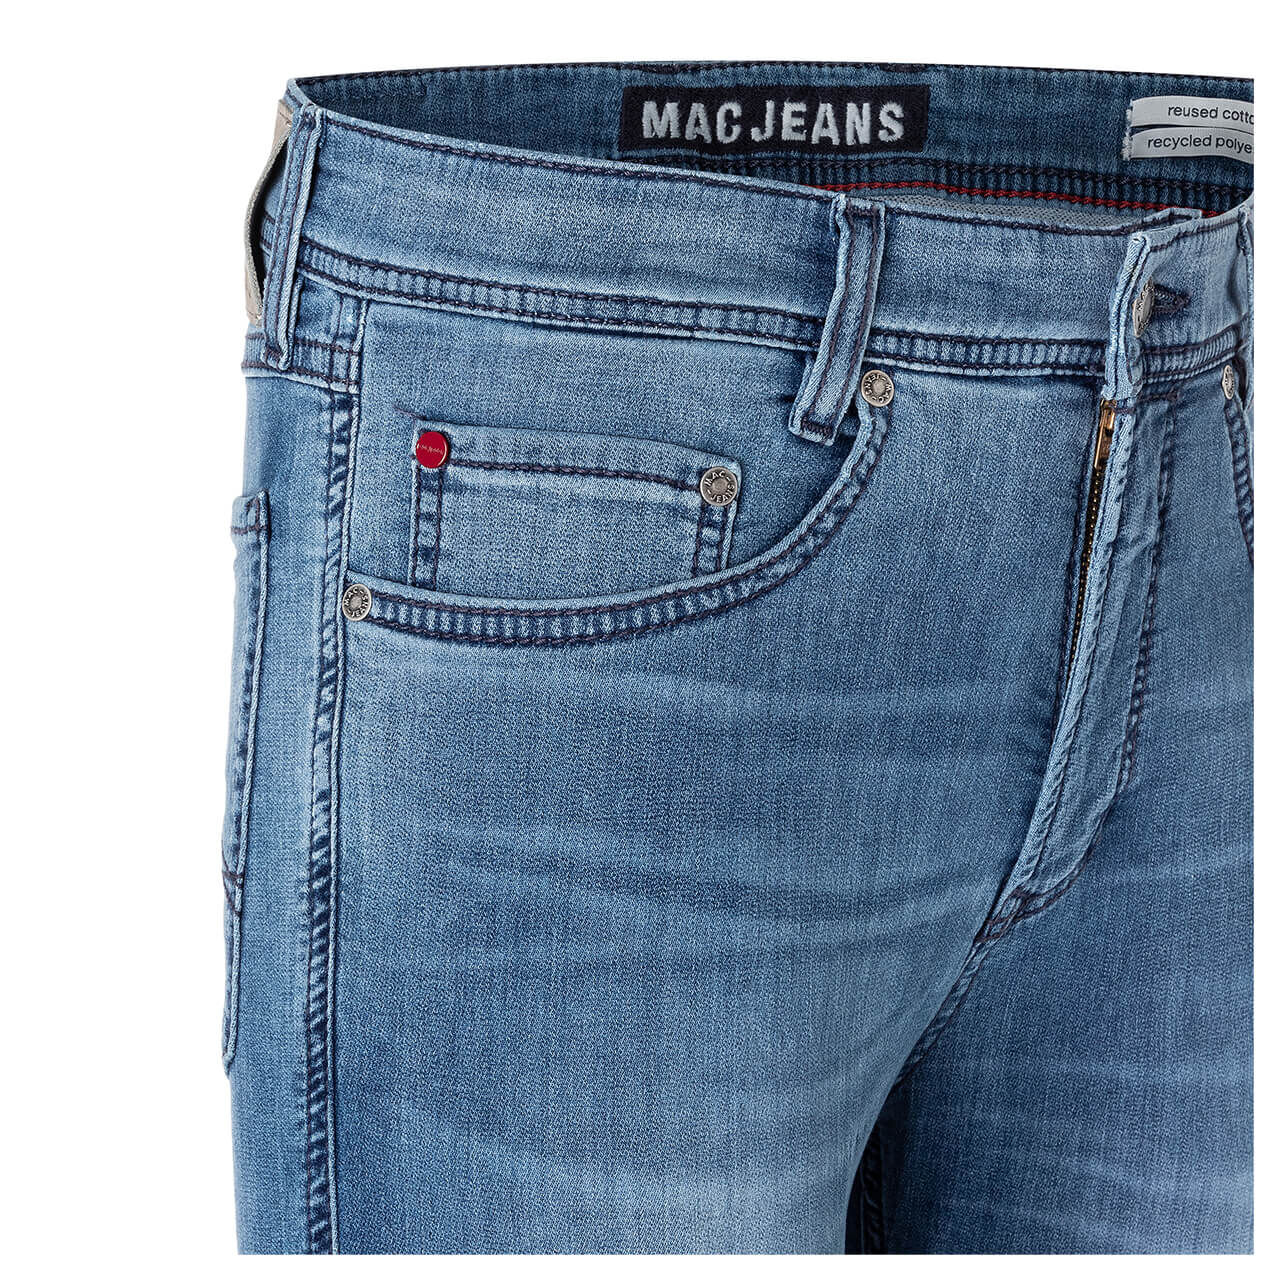 MAC Jeans Jogn für Herren in Blau verwaschen, FarbNr.: H467